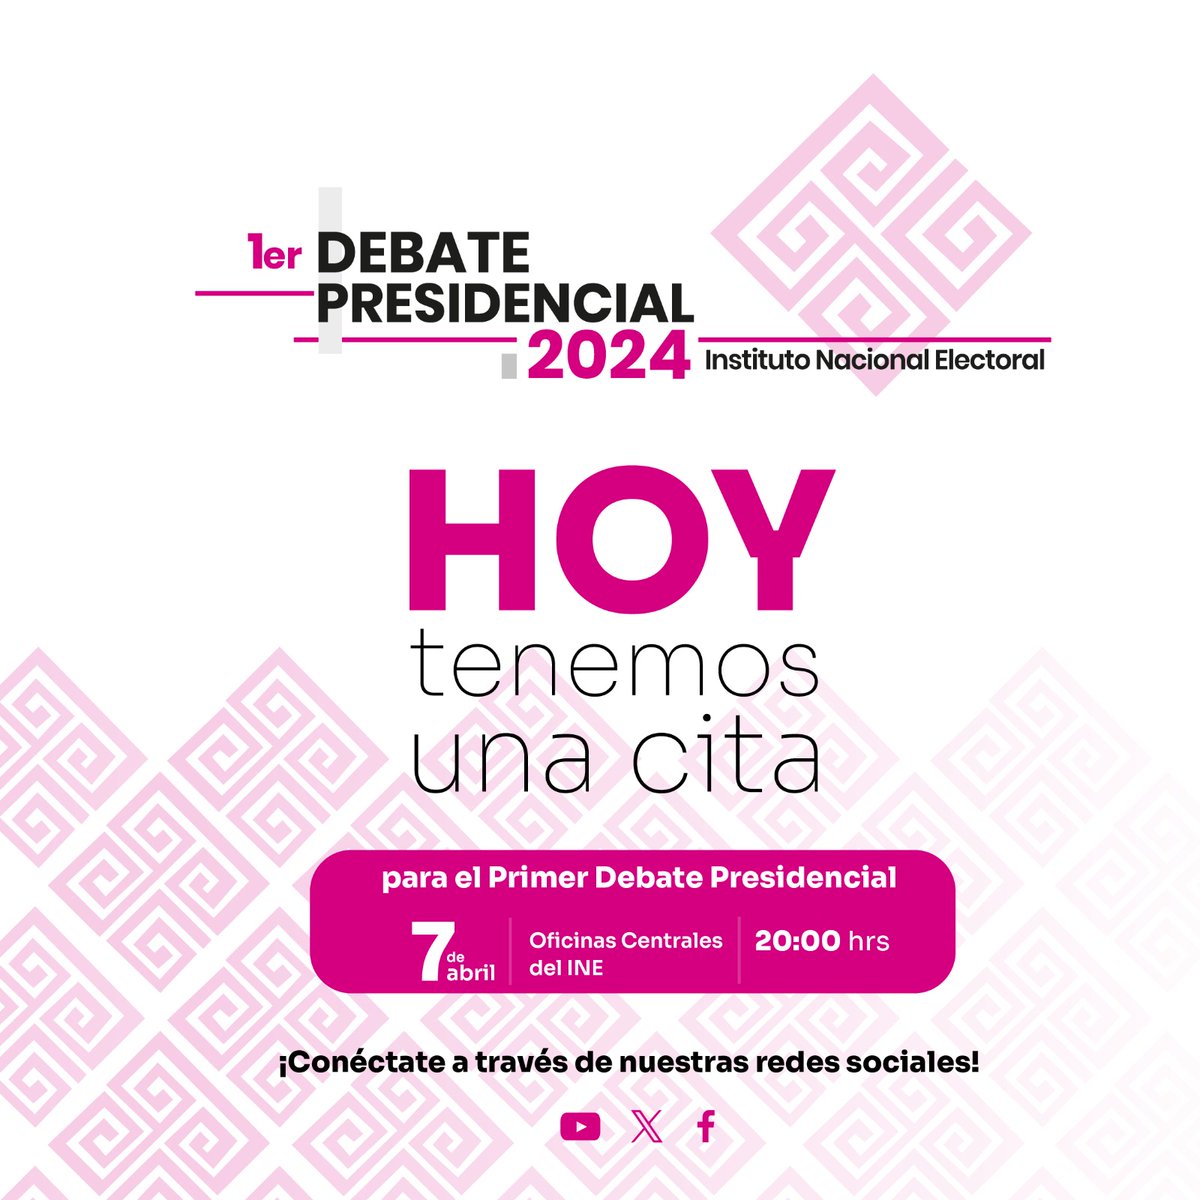 #DebateINE | Hoy a las 20:00 hrs tenemos una cita con la democracia. Esperamos un debate de altura que permita ejercer un 🗳 informado el 2 de junio y abone a la solución de los problemas de 🇲🇽. @jsc_santiago @MarSilvaT1 @el_nezz @EGardunoS @FcoJMonroy @pedroalvarado31